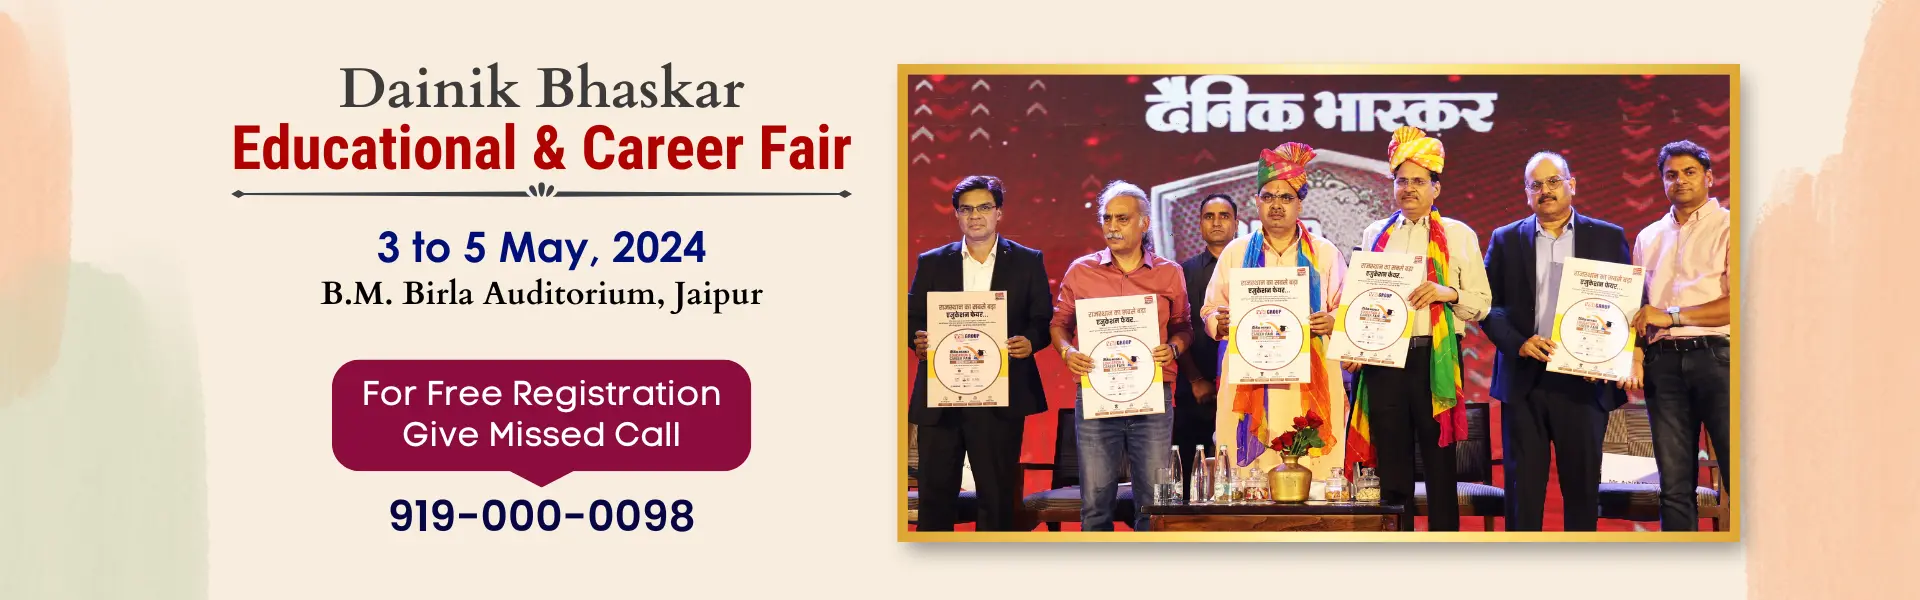 Dainik-bhaskar-education-and-career-fair